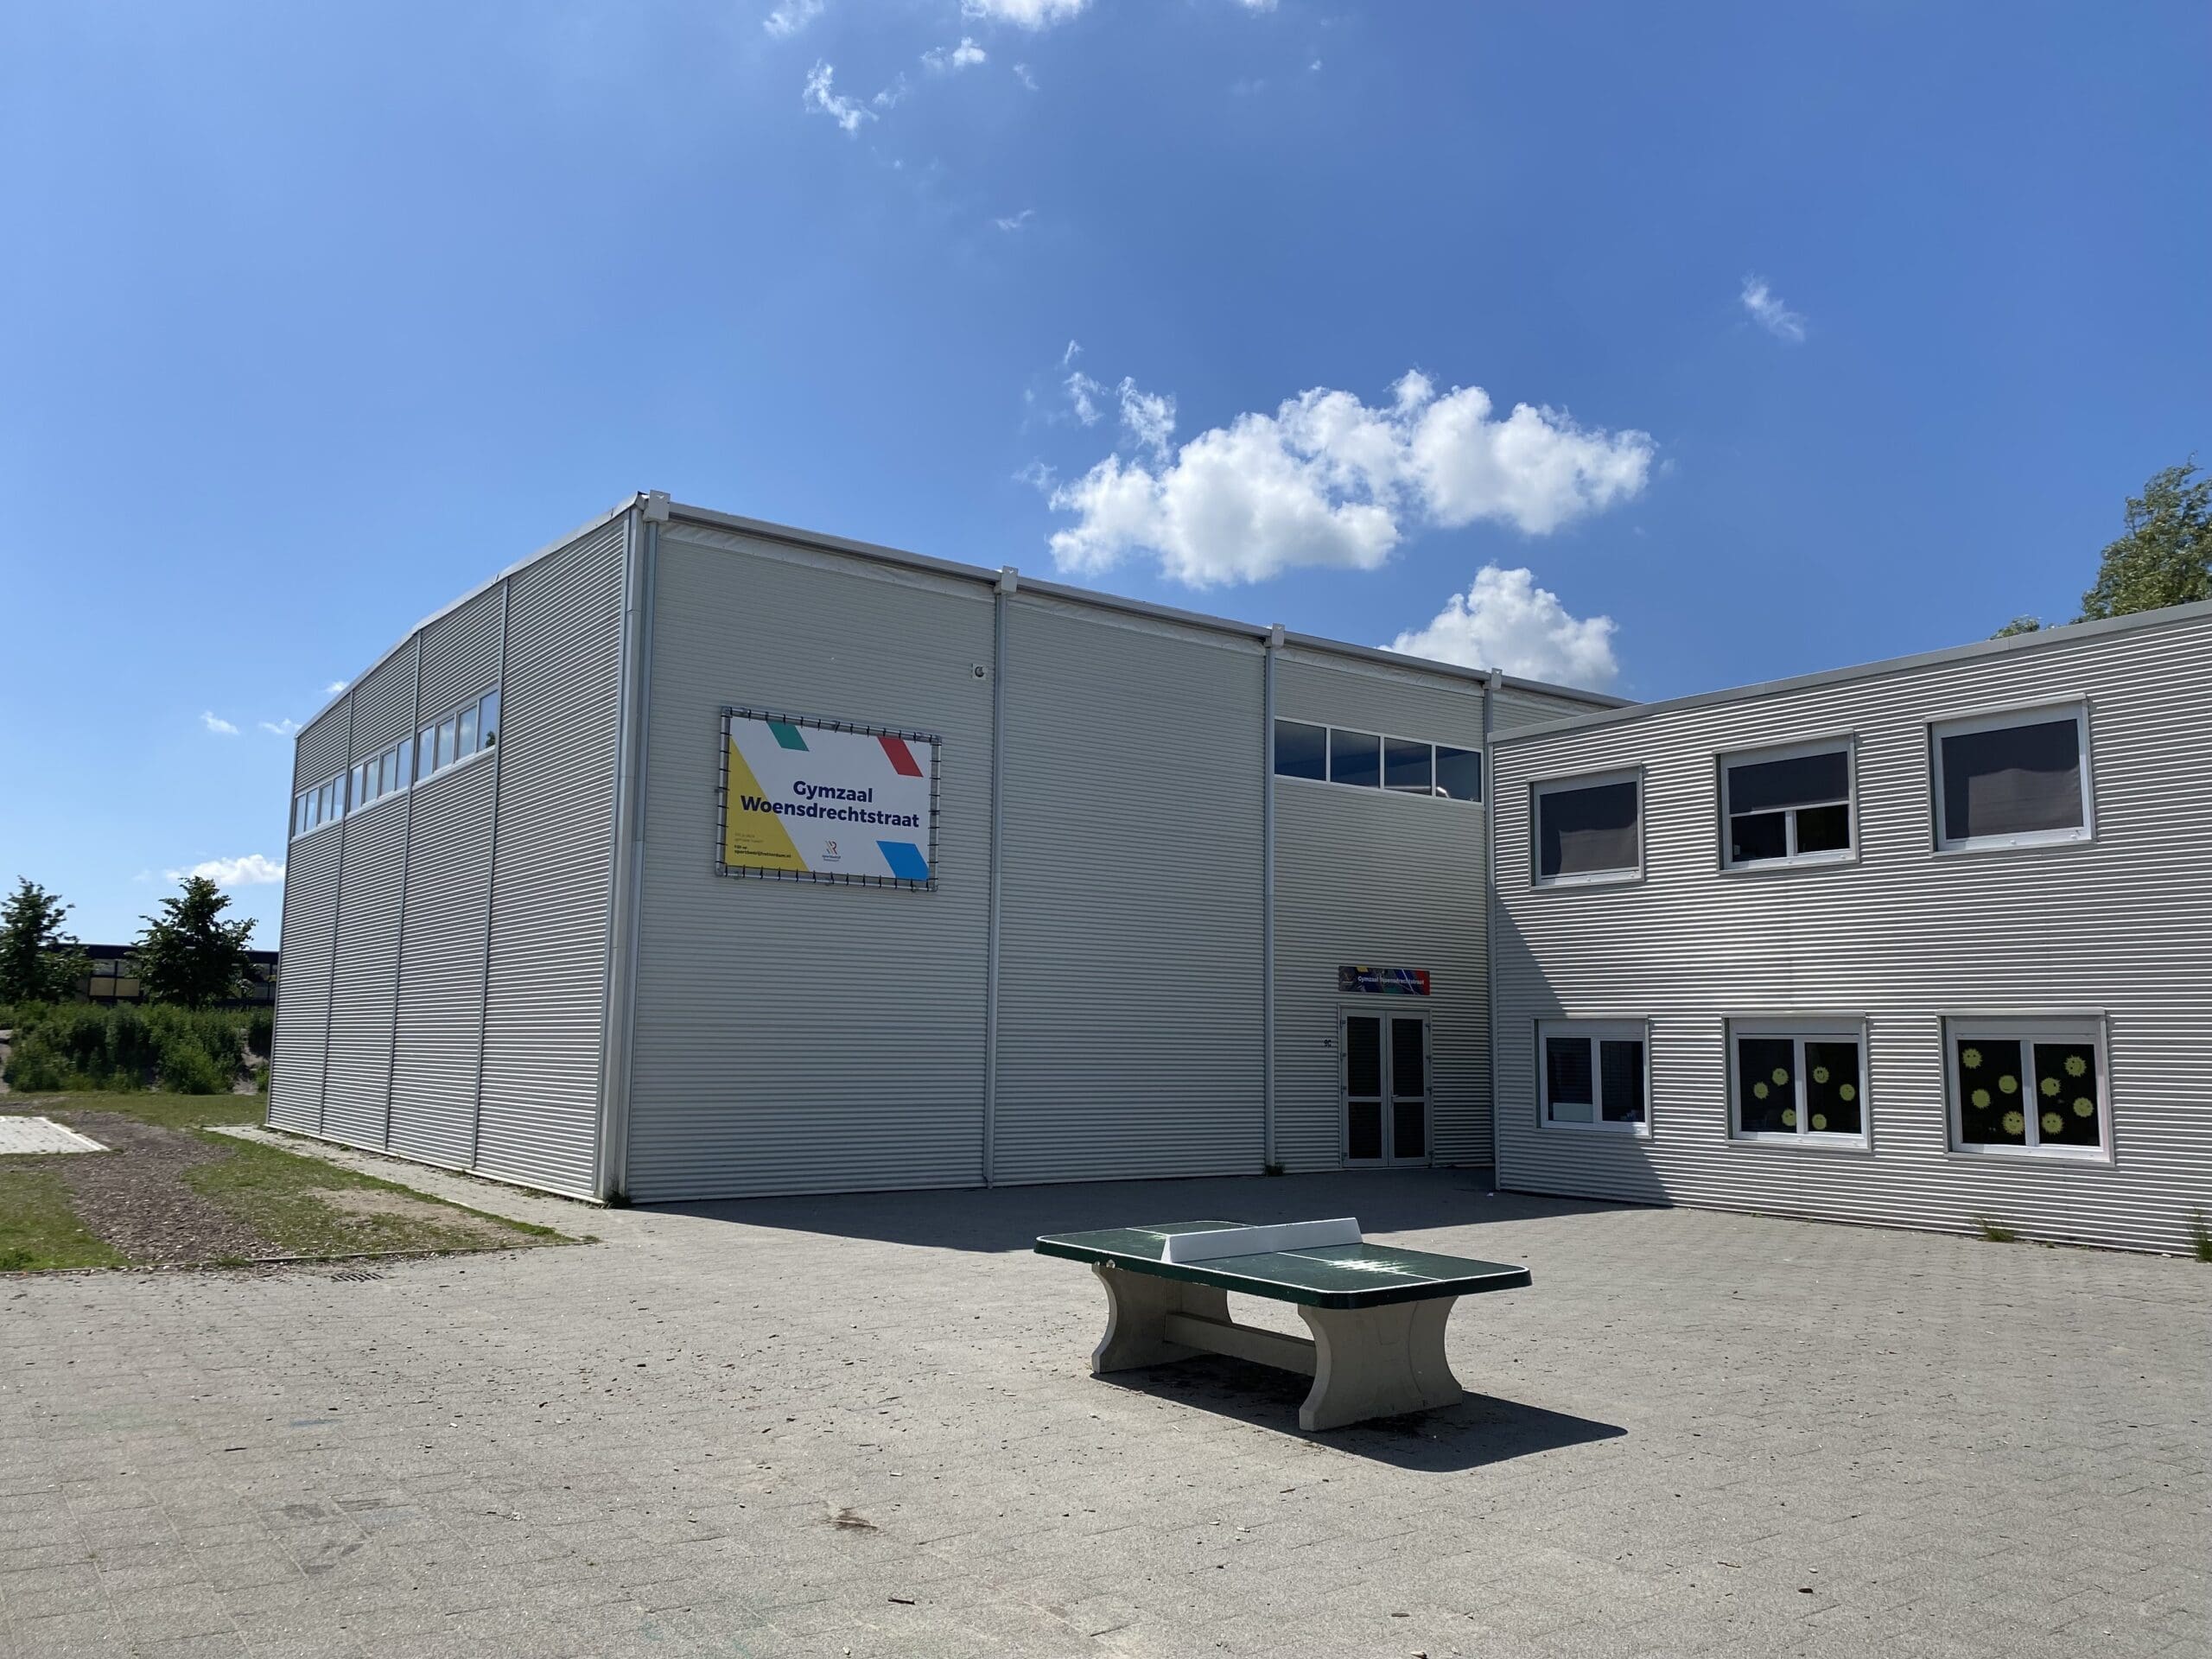 Salle de sport Park16hoven – Renforcer l’éducation et enrichir les communautés